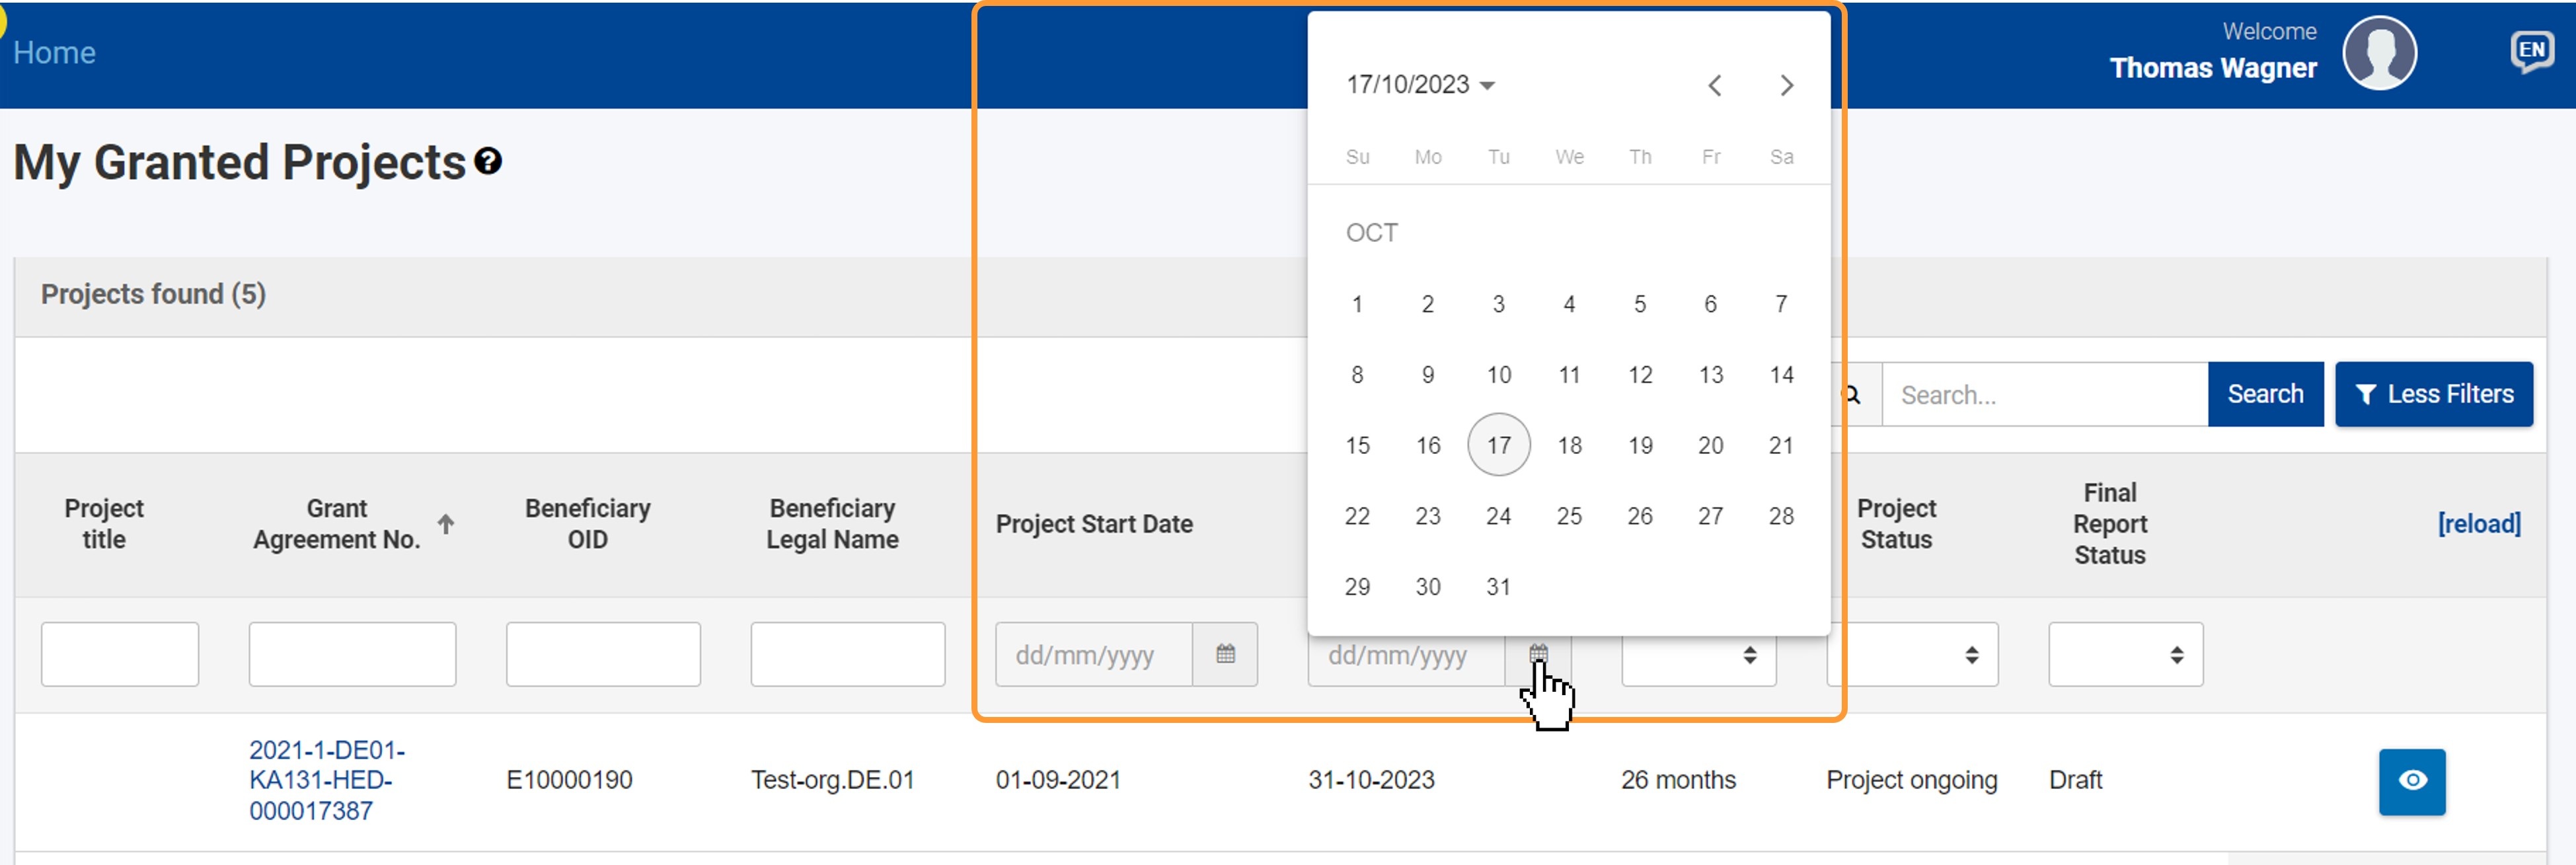 Project Start Date calendar